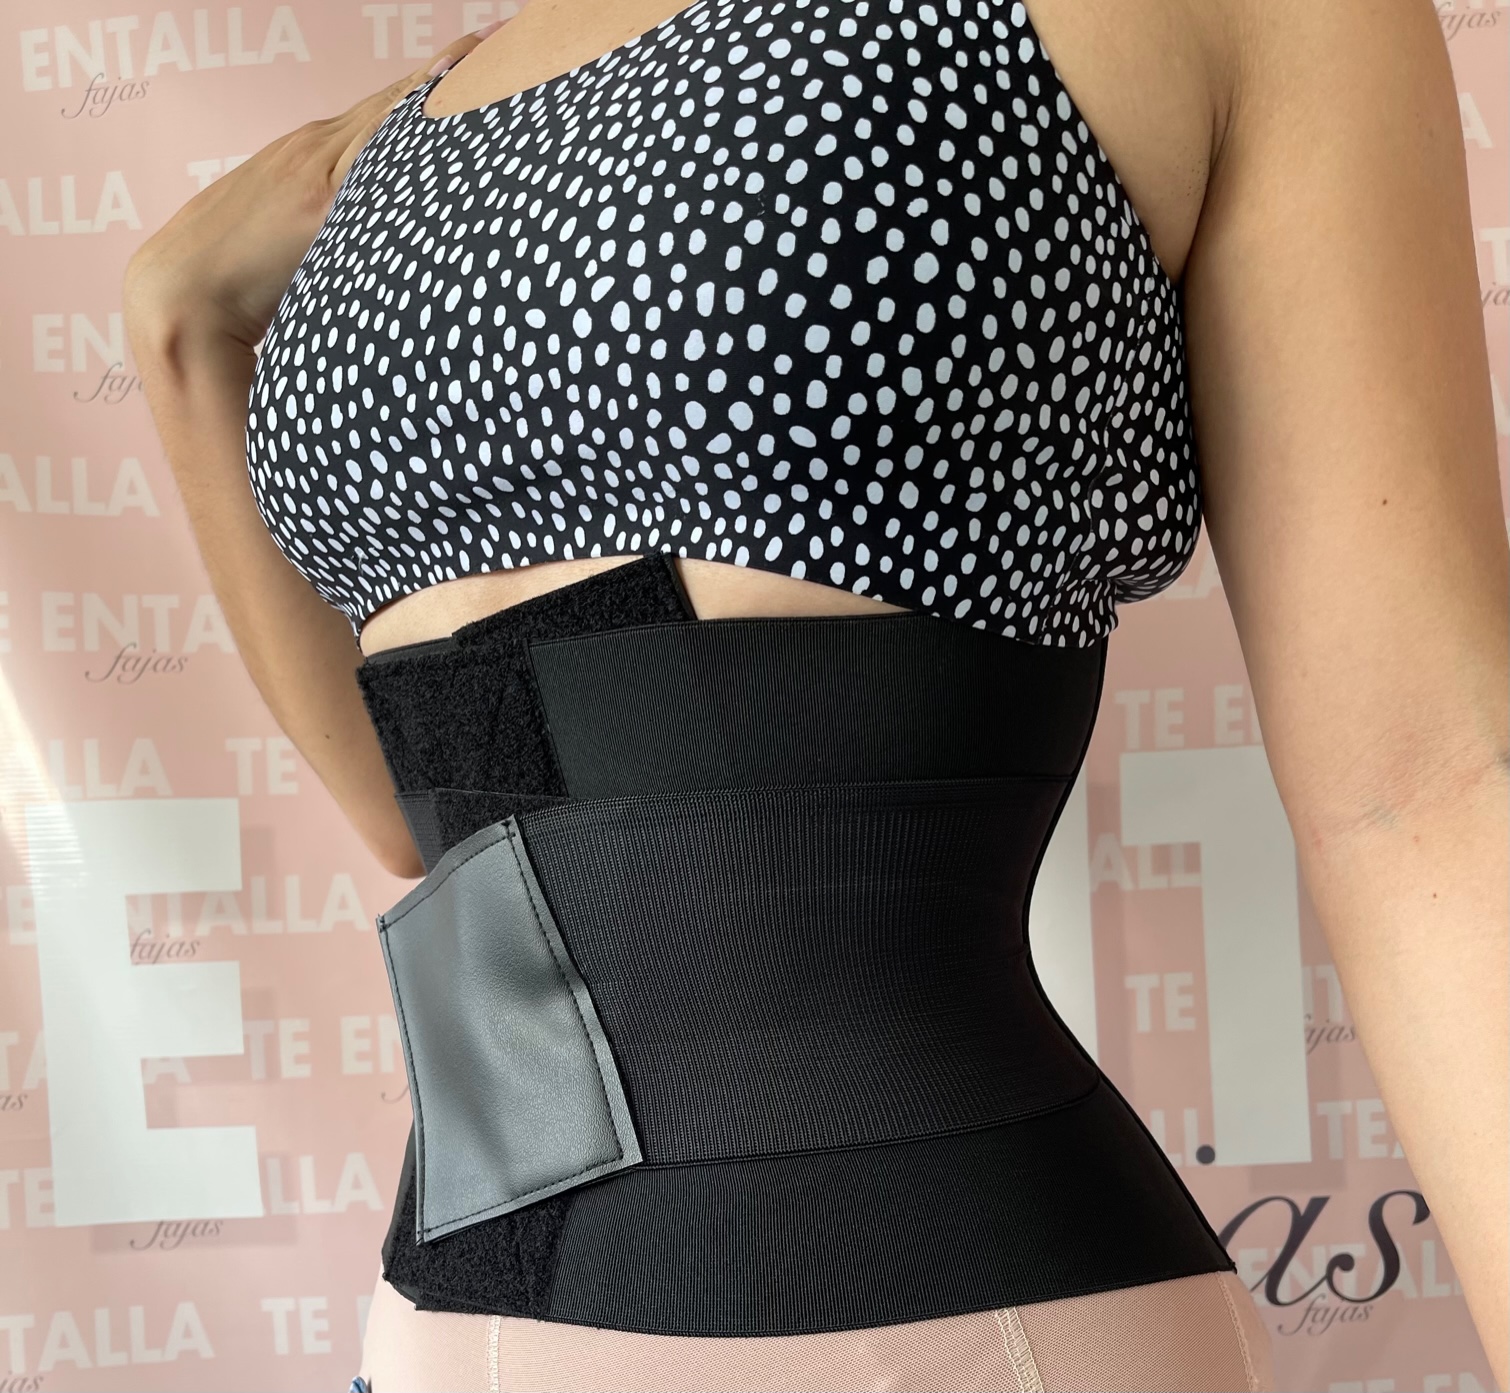 Complete body shapewear – Te Entalla